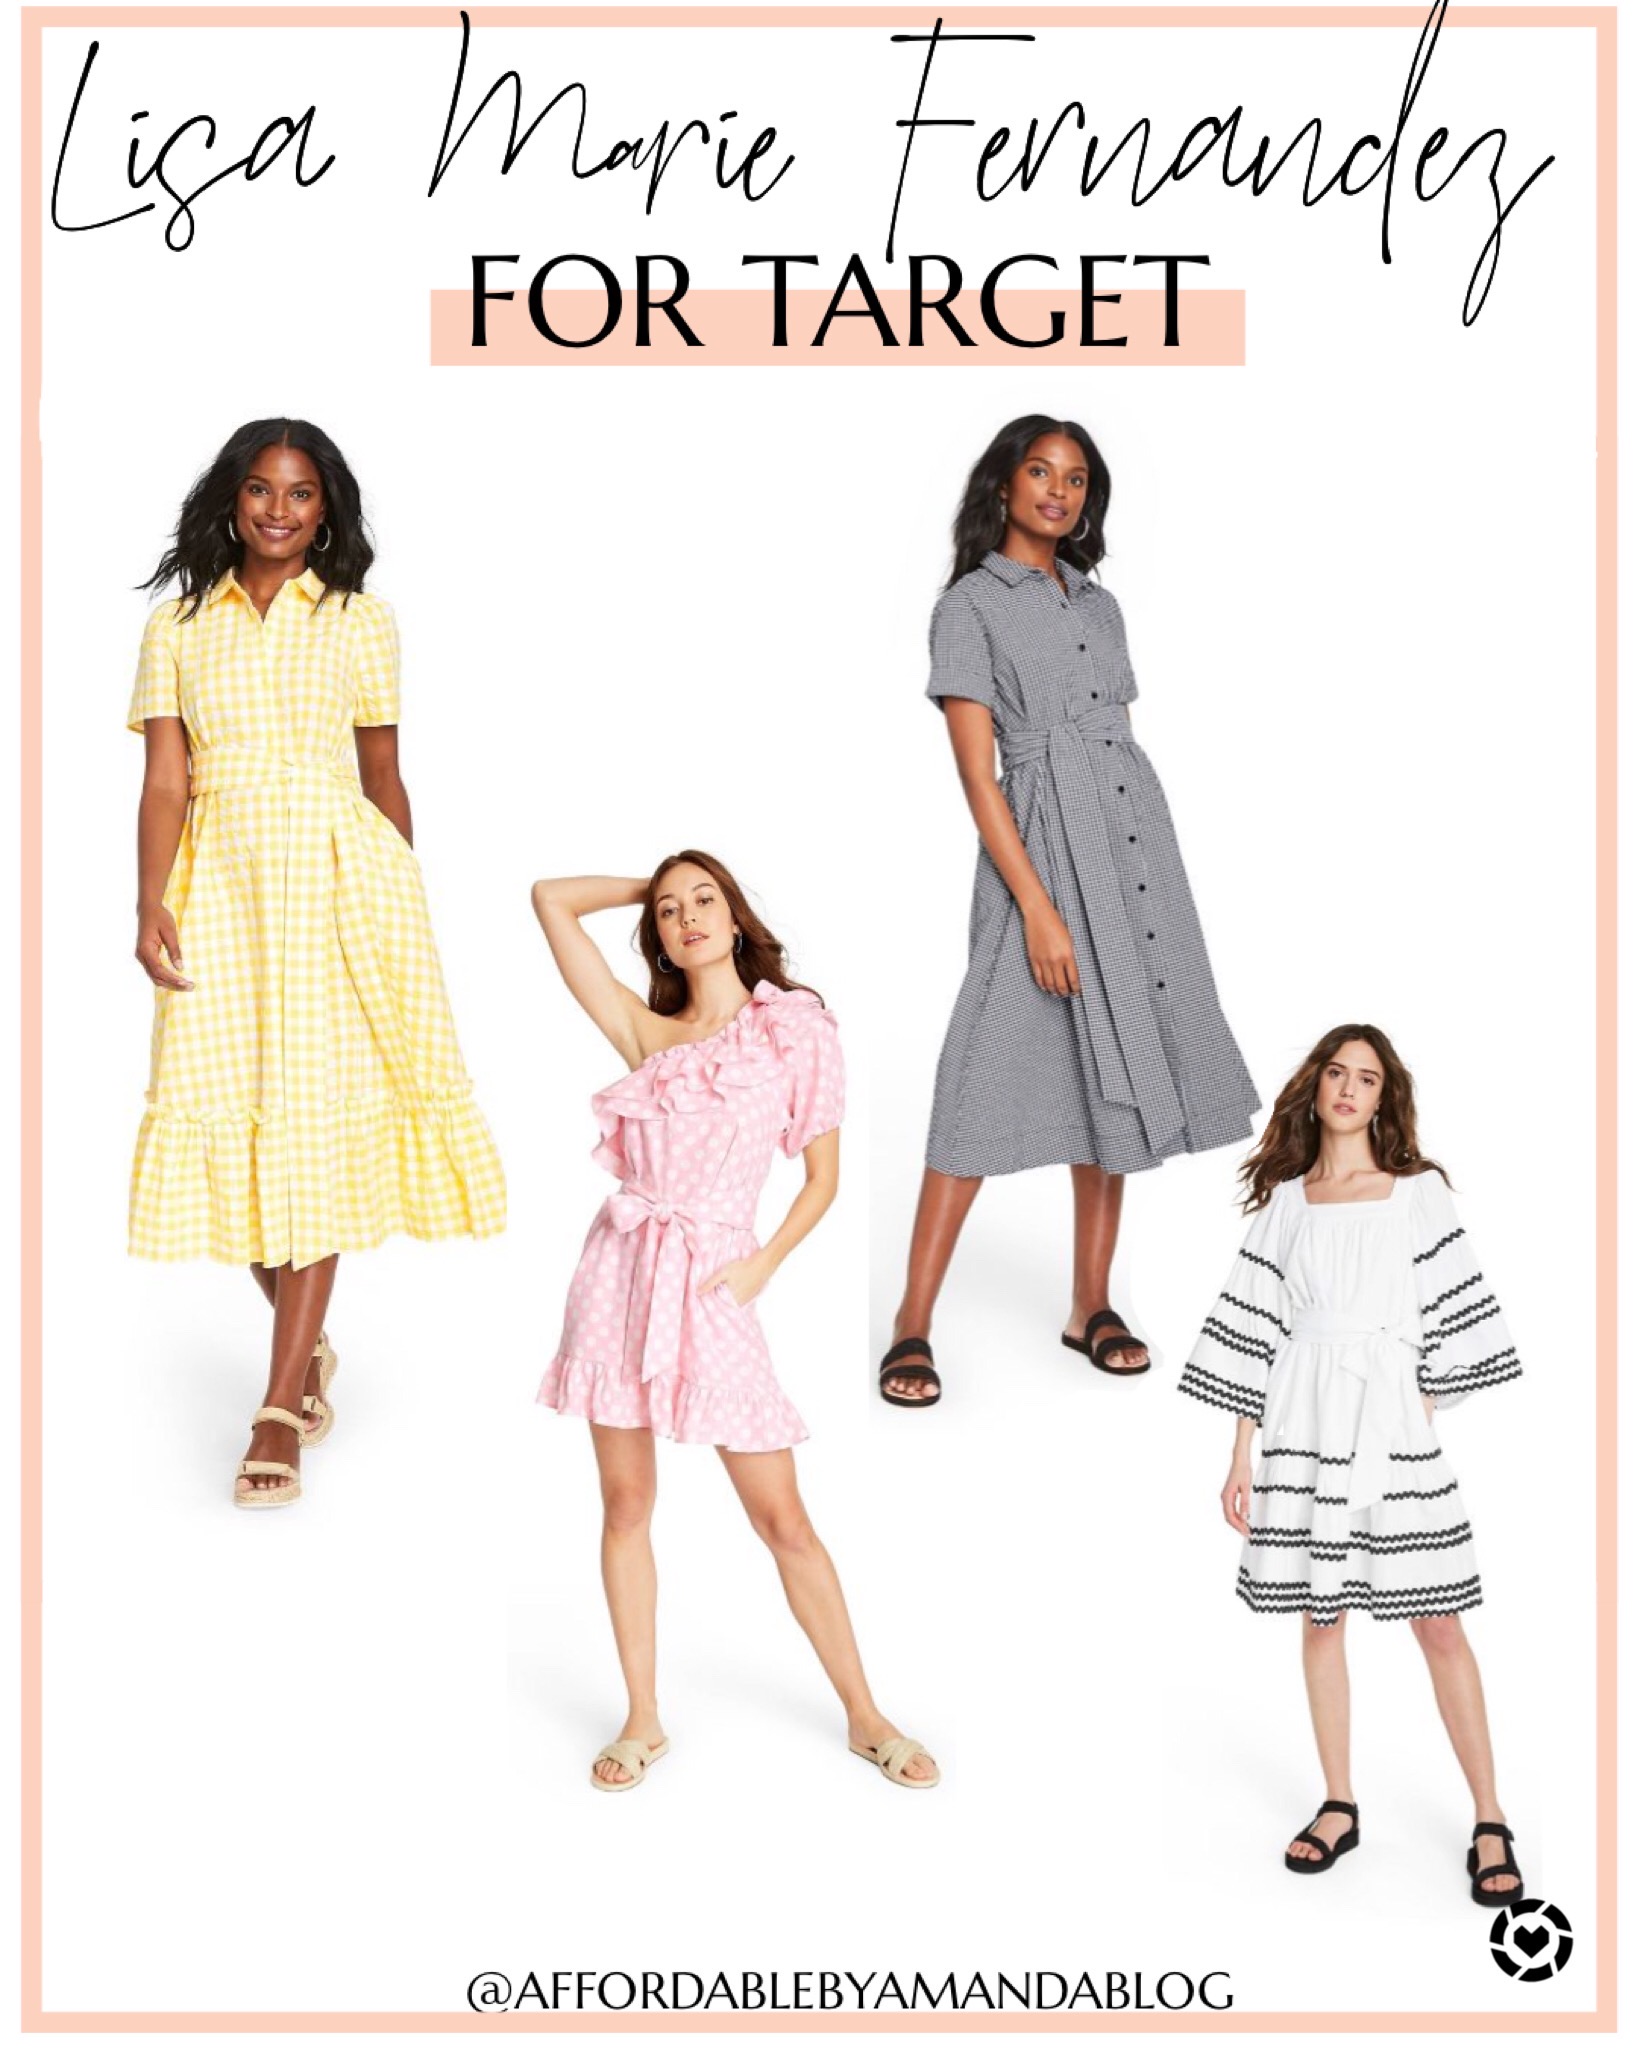 Lisa Marie Fernandez for Target - Designer Dress Collection